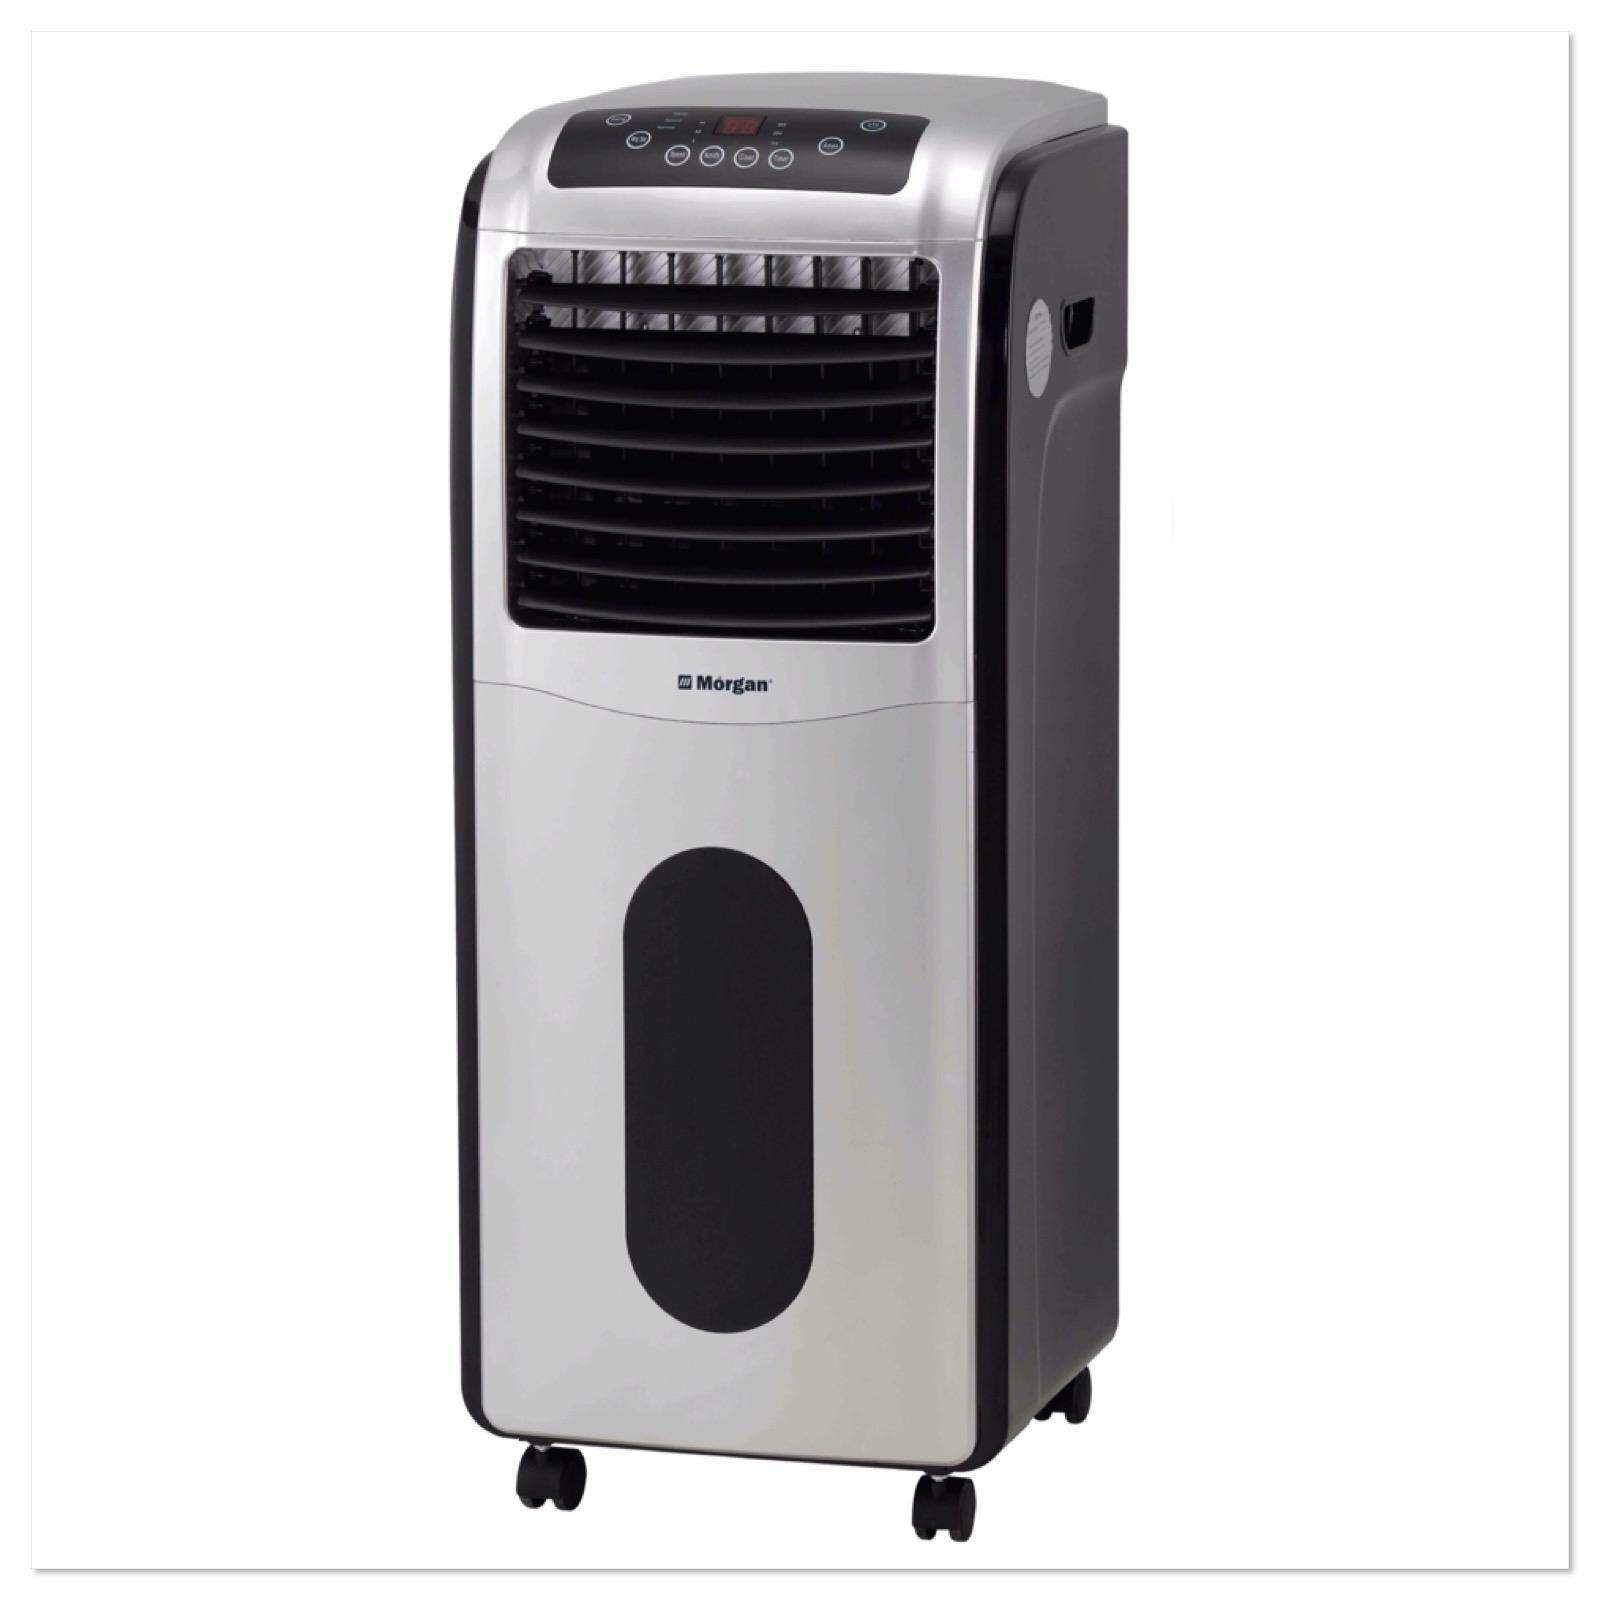 morgan air cooler 3 in 1 price